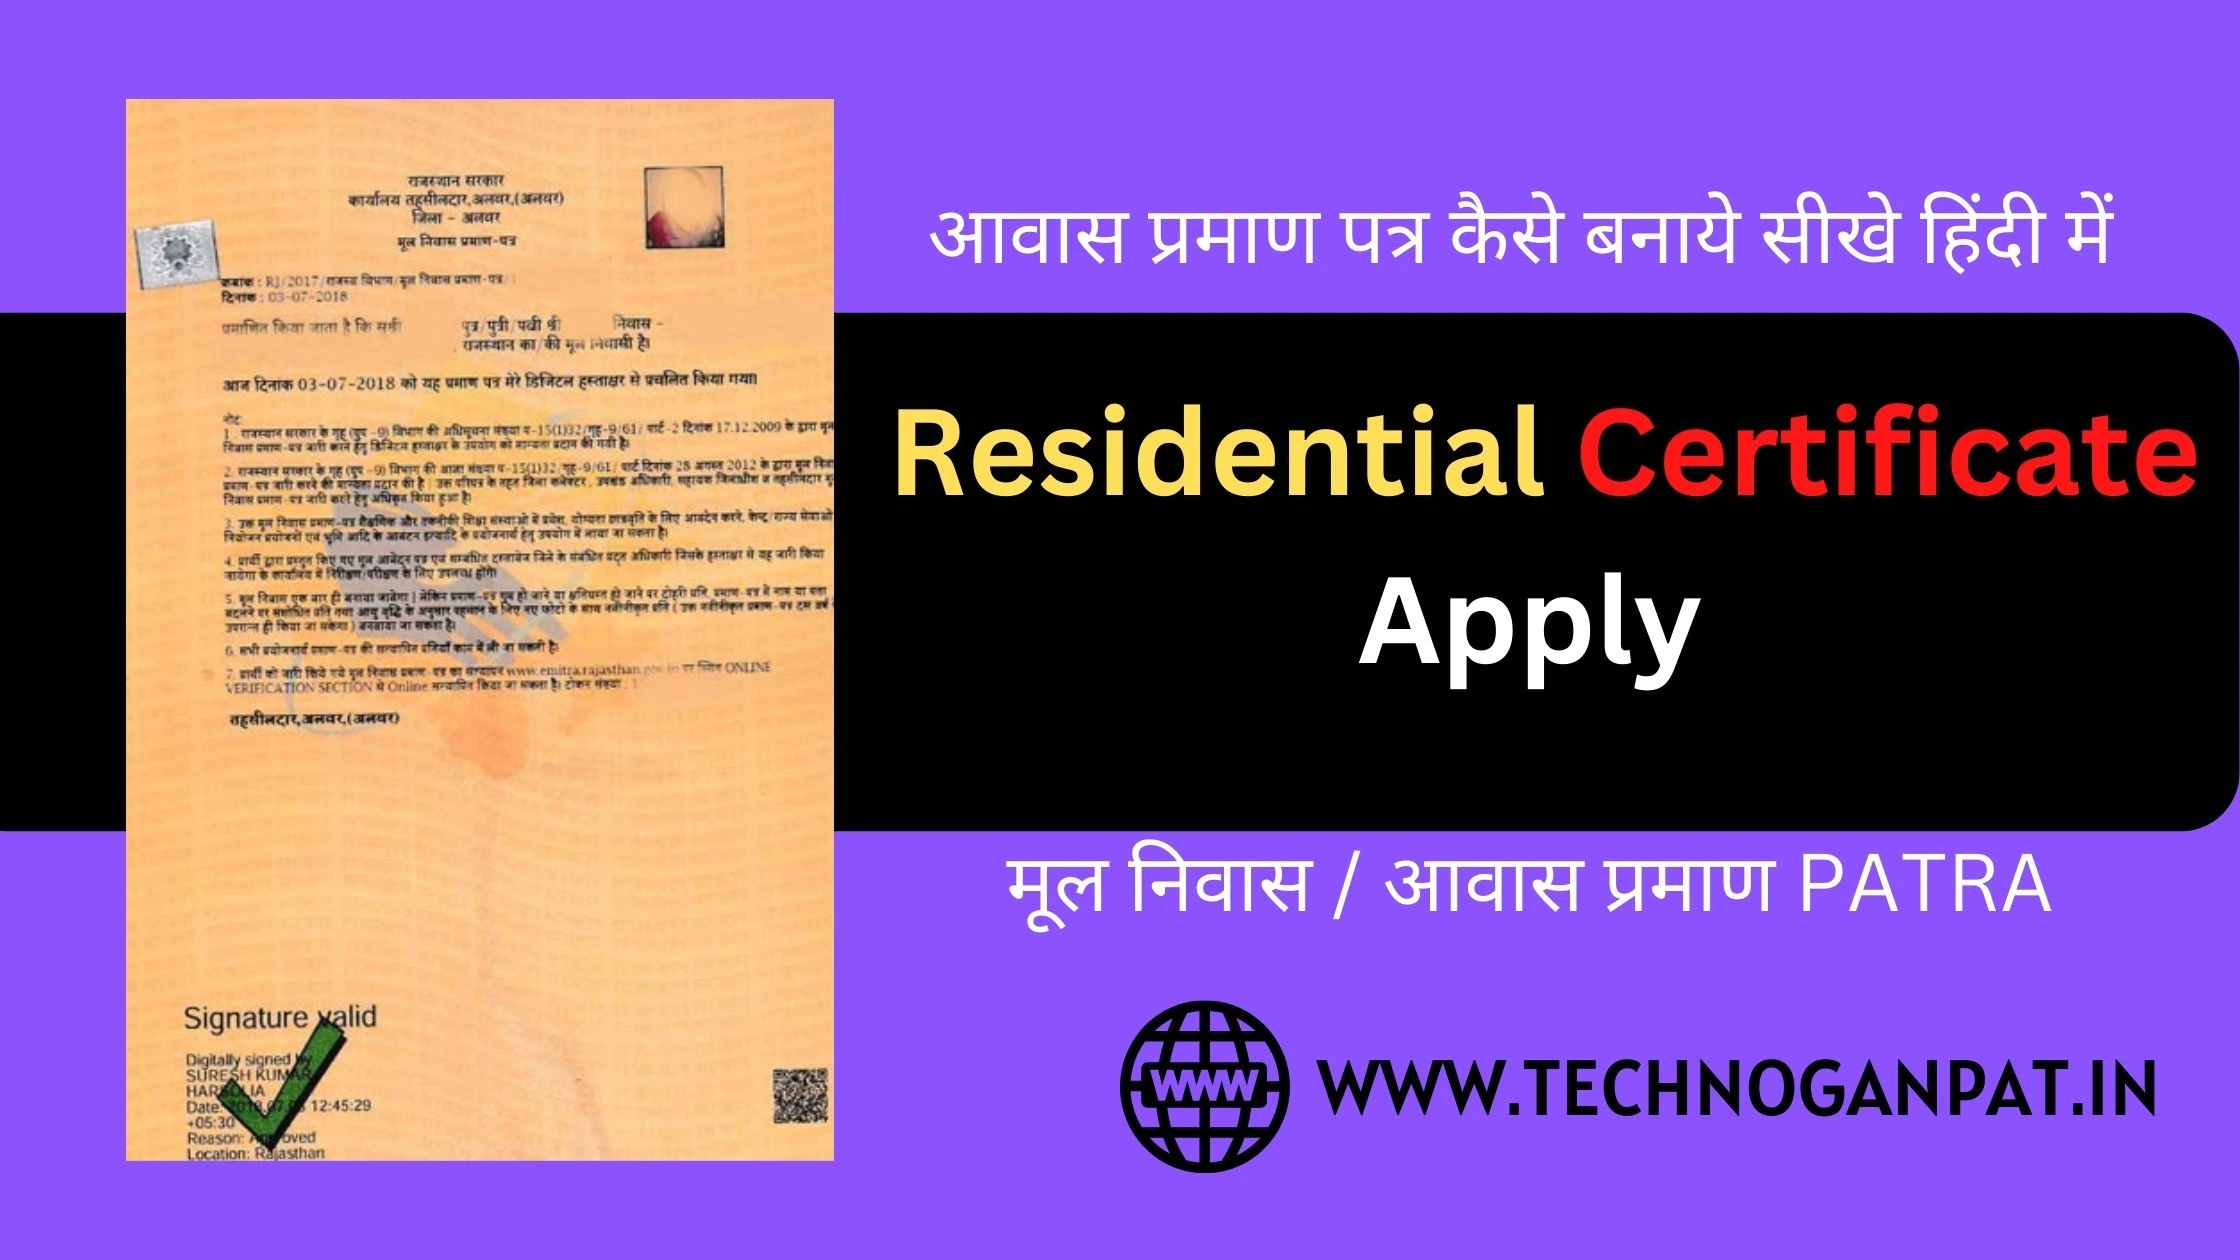 Residential Certificate Apply कैसे करे